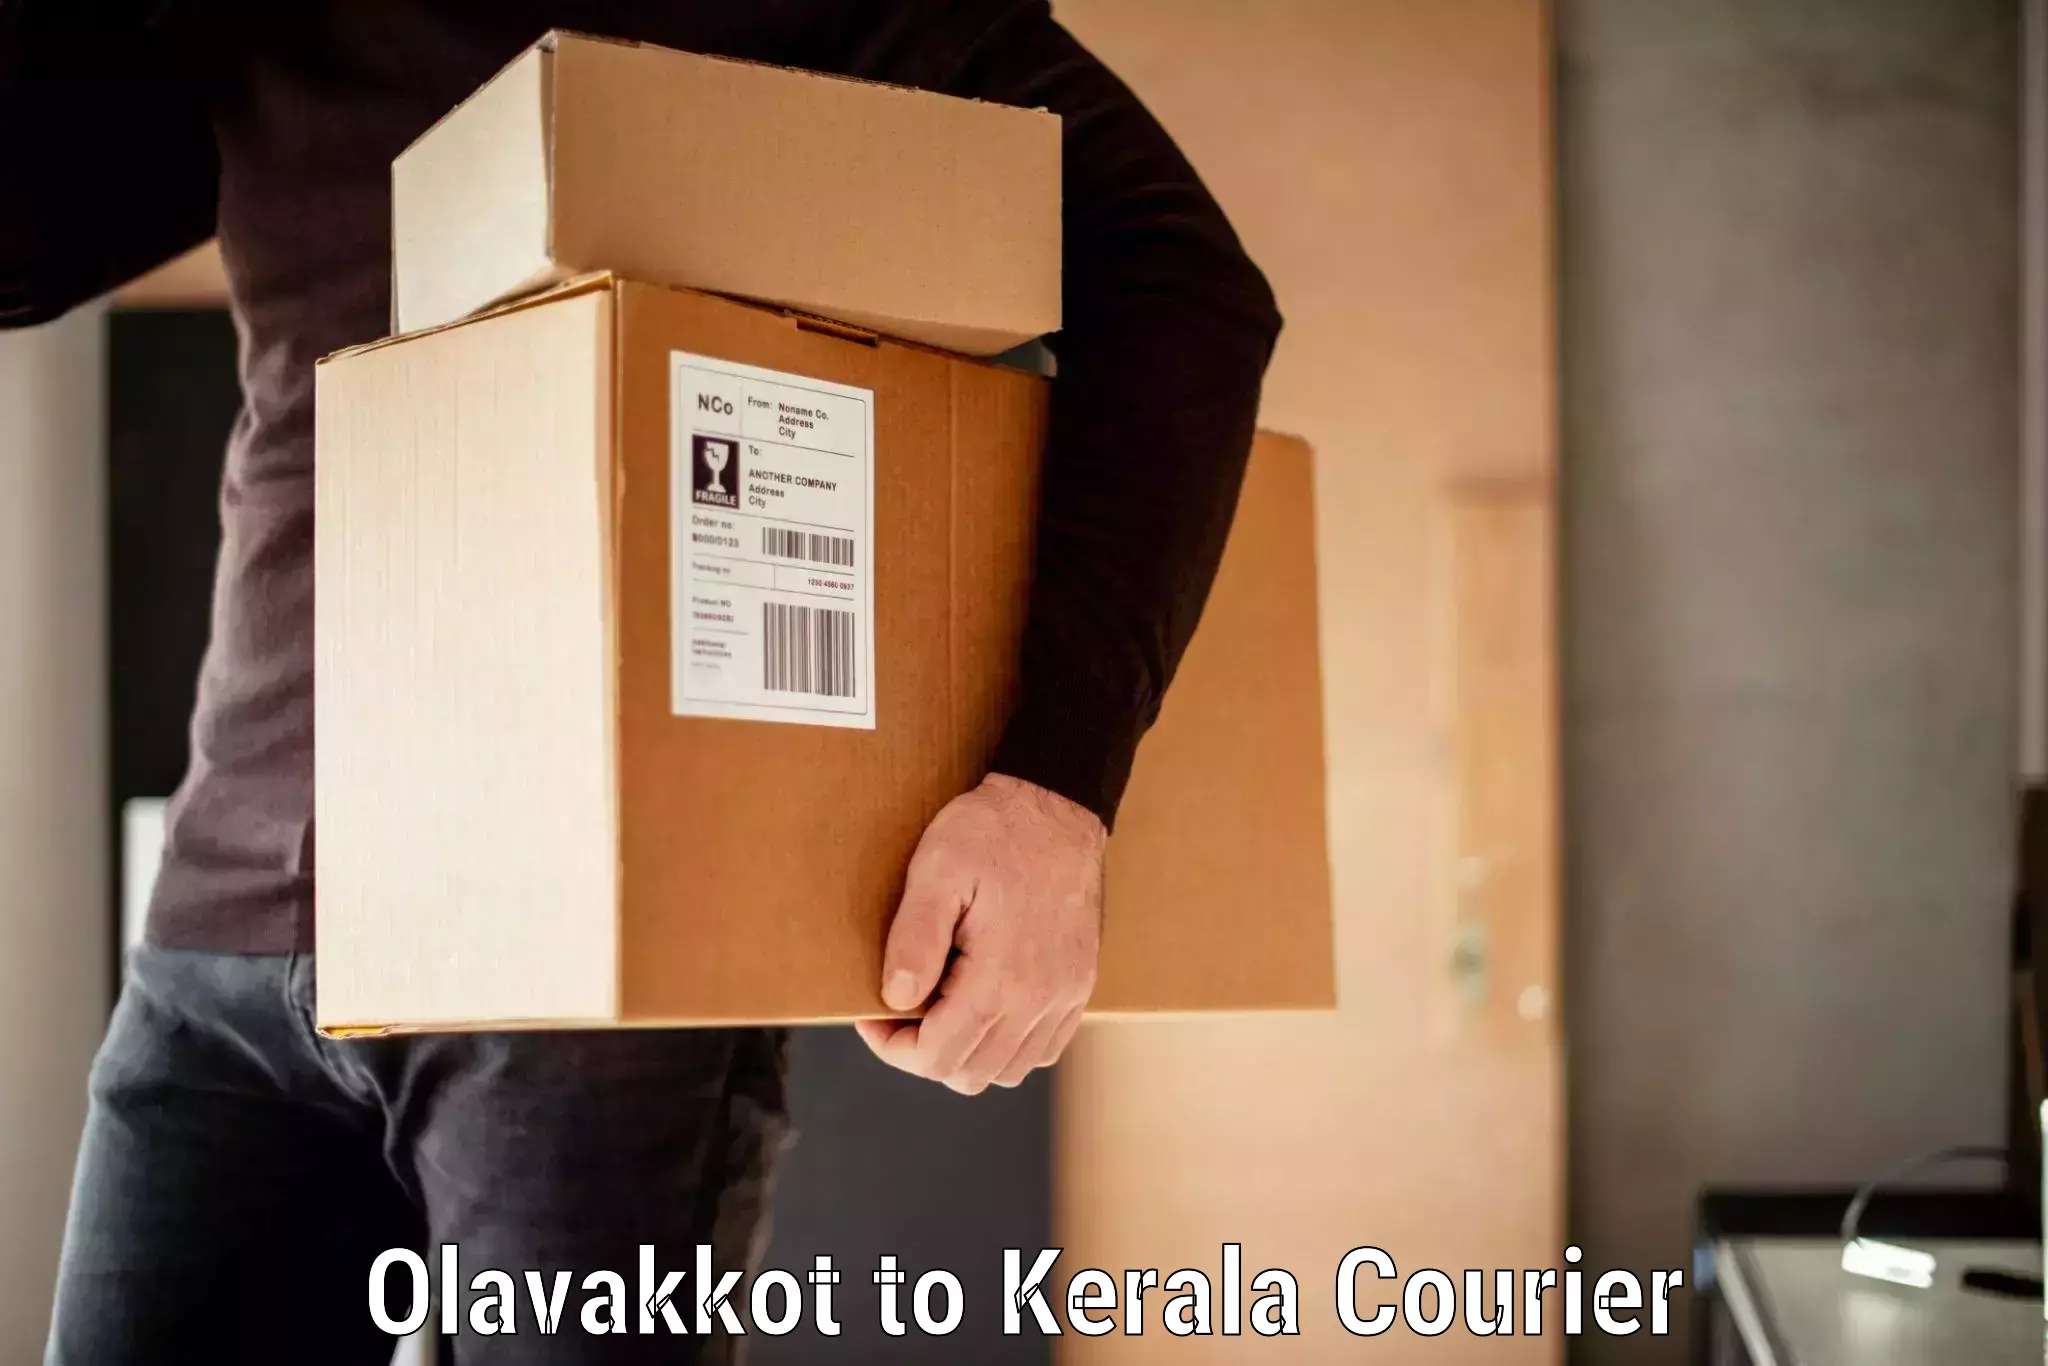 Baggage transport scheduler Olavakkot to Kerala